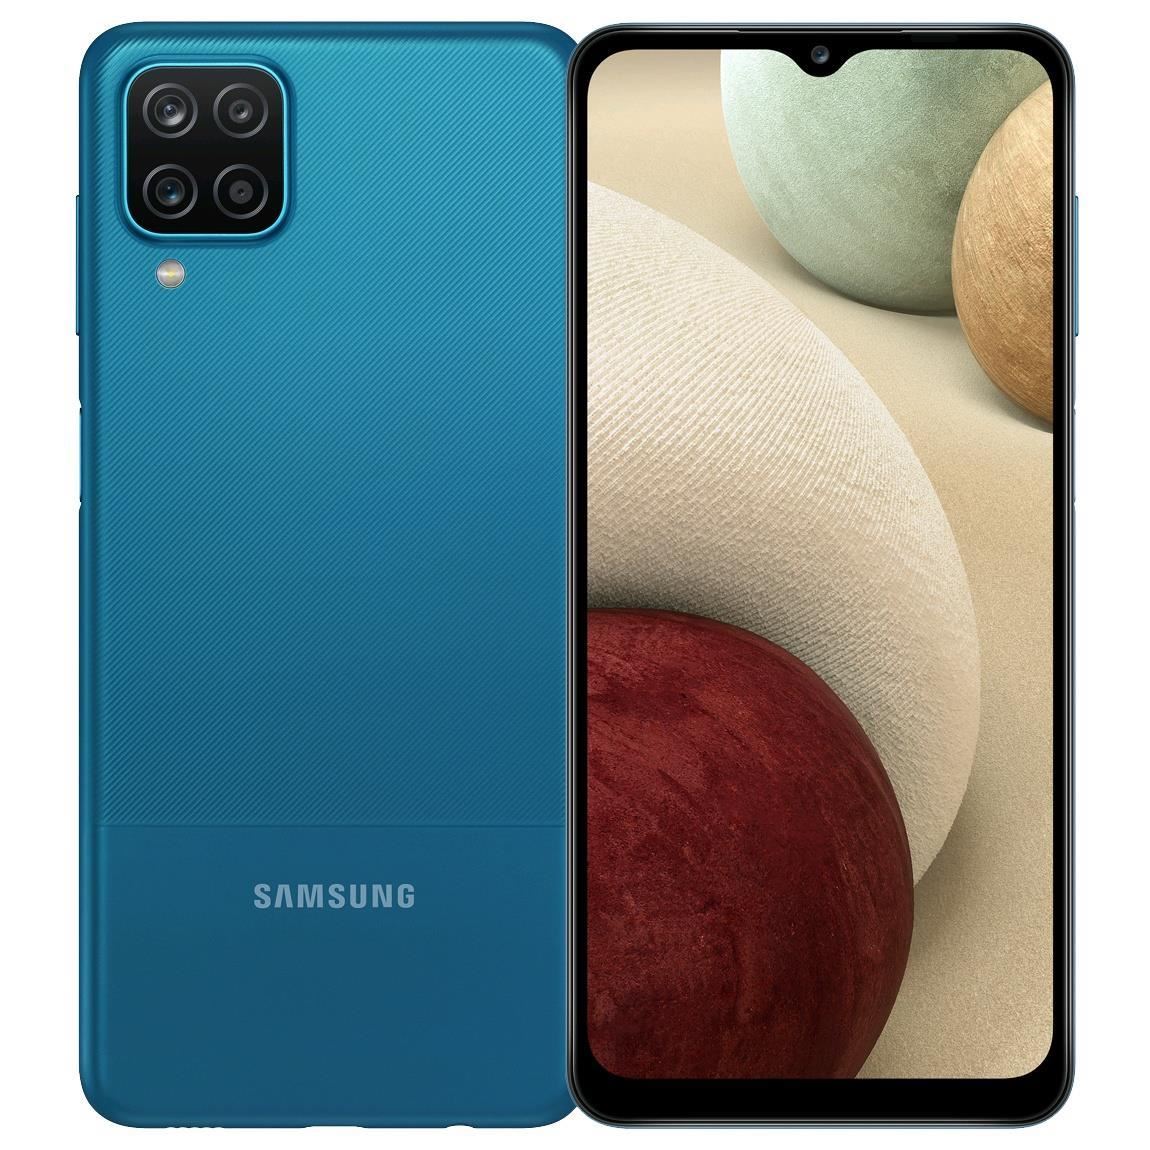 Samsung Galaxy A12 Nacho 4G Smartphone Unlocked 32-64-128GB